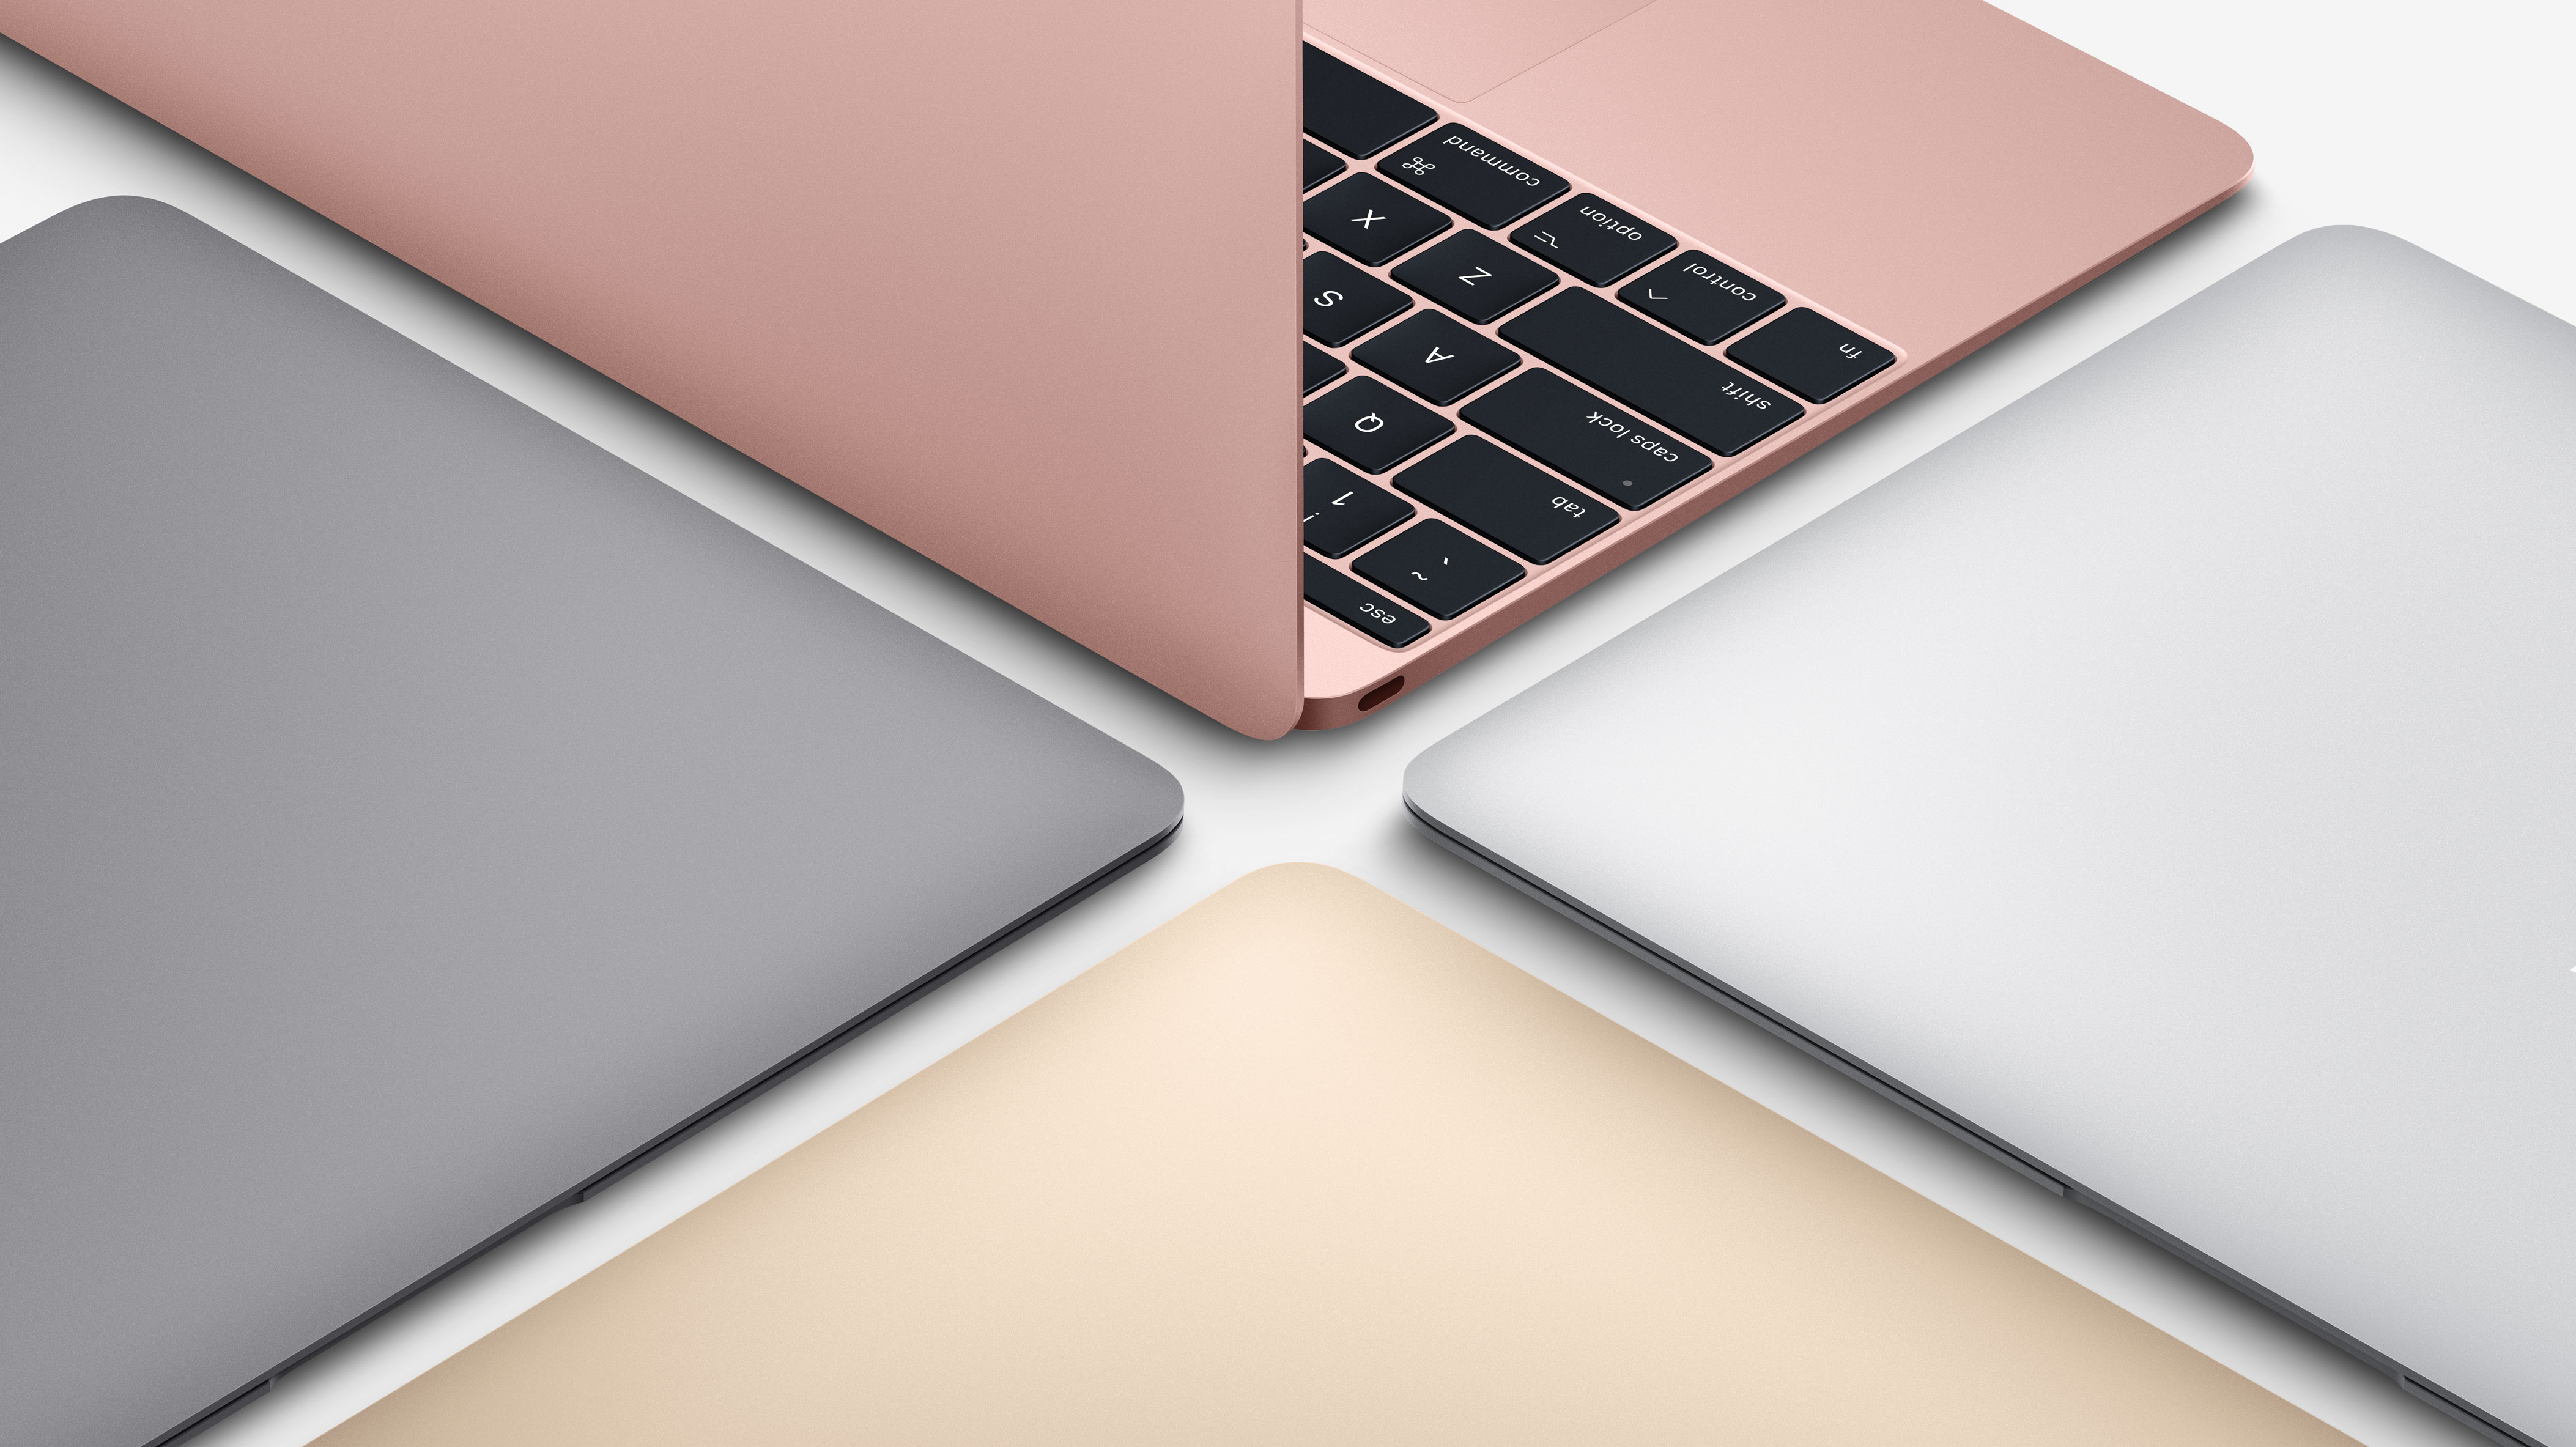 MacBook mit 12 Zoll: Nutzer trauern um kompaktesten Mac | heise online